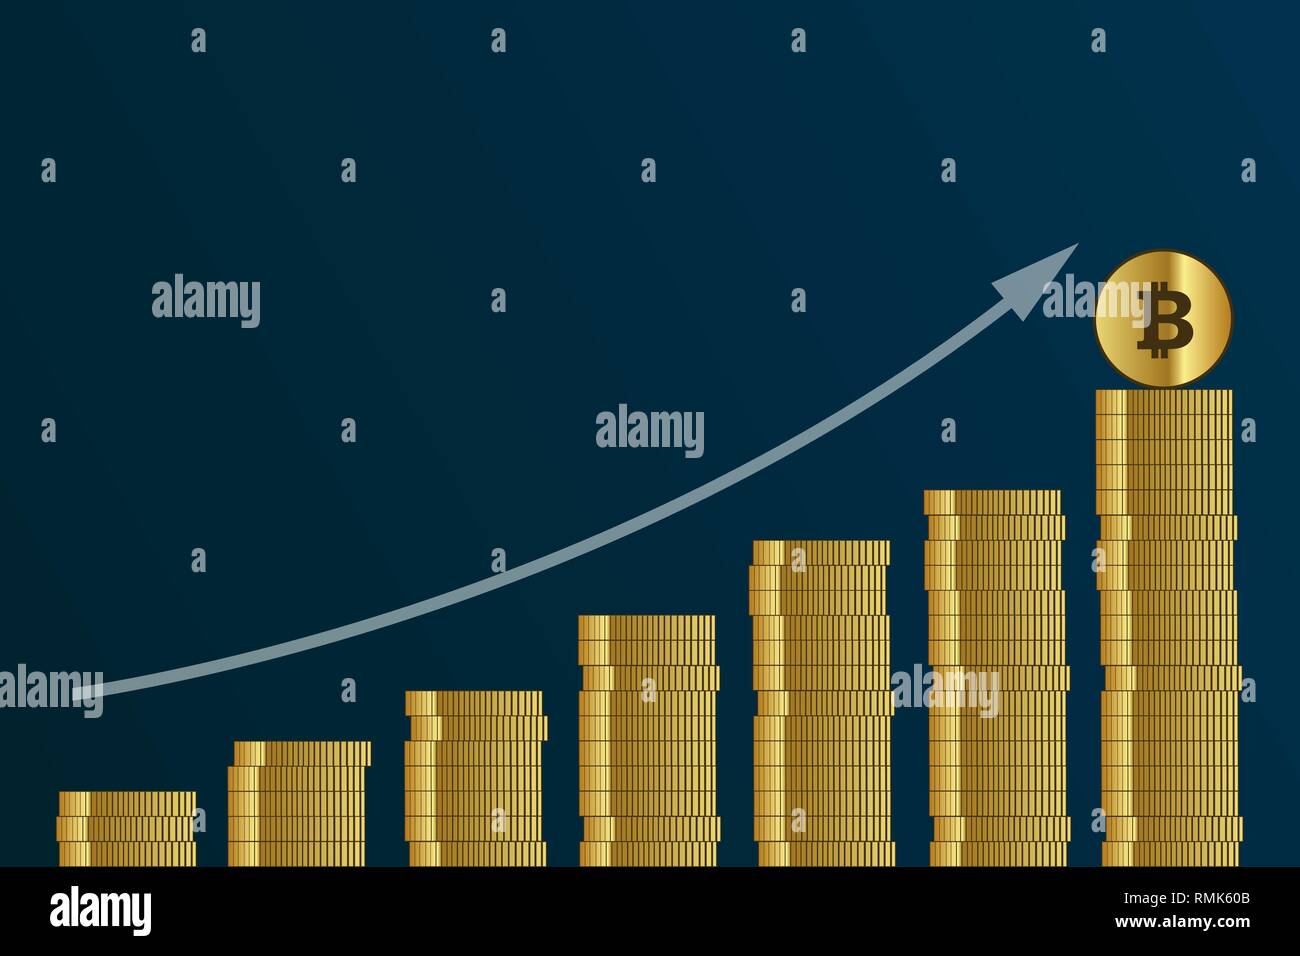 Steigende bitcoin Kurs viele Goldene digitale Münzen Finanzen konzept Vektor-illustration EPS 10. Stock Vektor